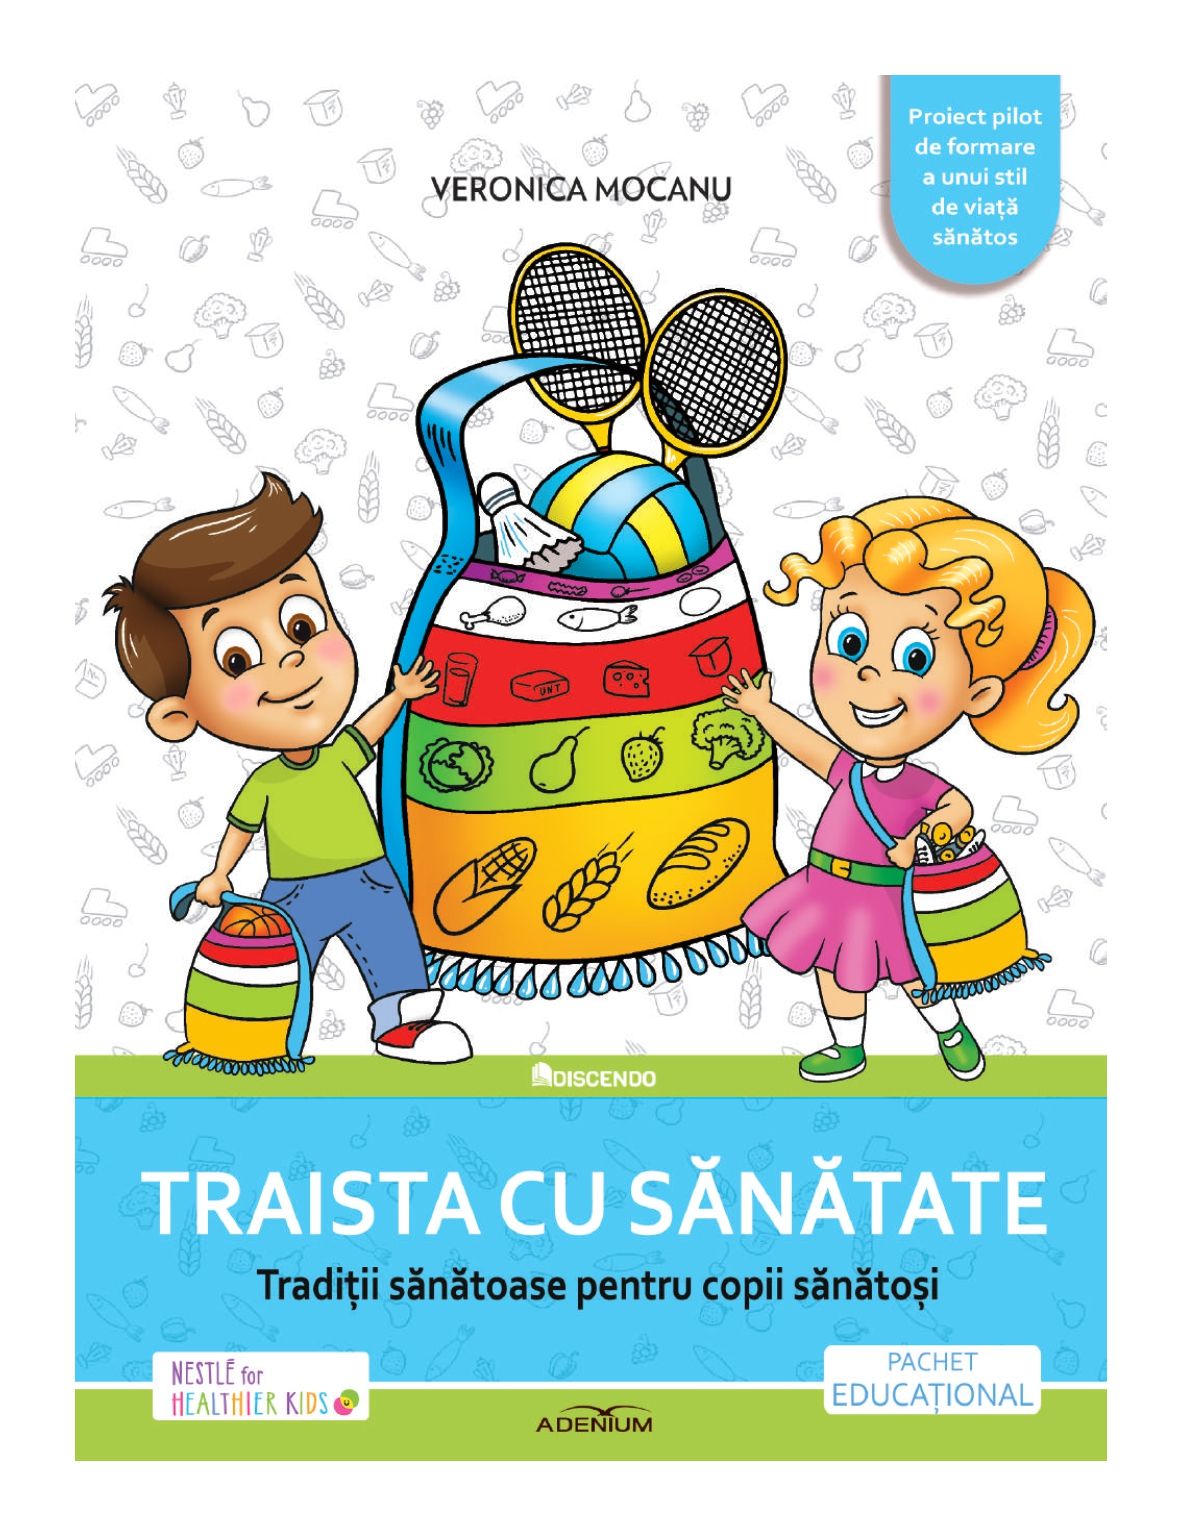 Program educațional de nutriție pentru peste 50.000 de copii din județul Iași